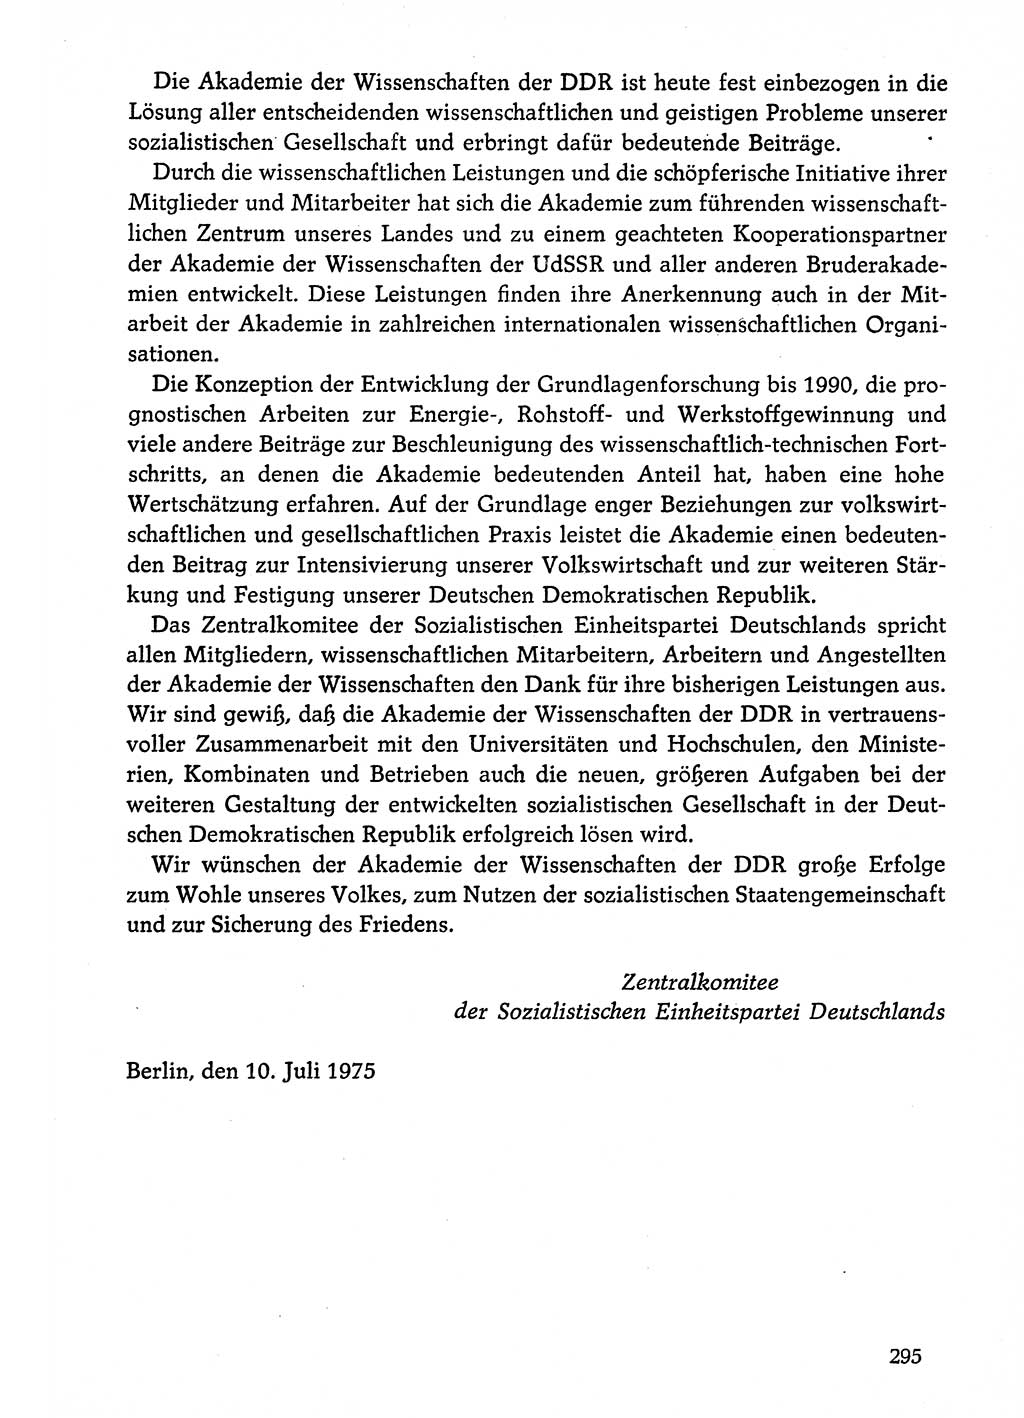 Dokumente der Sozialistischen Einheitspartei Deutschlands (SED) [Deutsche Demokratische Republik (DDR)] 1974-1975, Seite 295 (Dok. SED DDR 1978, Bd. ⅩⅤ, S. 295)